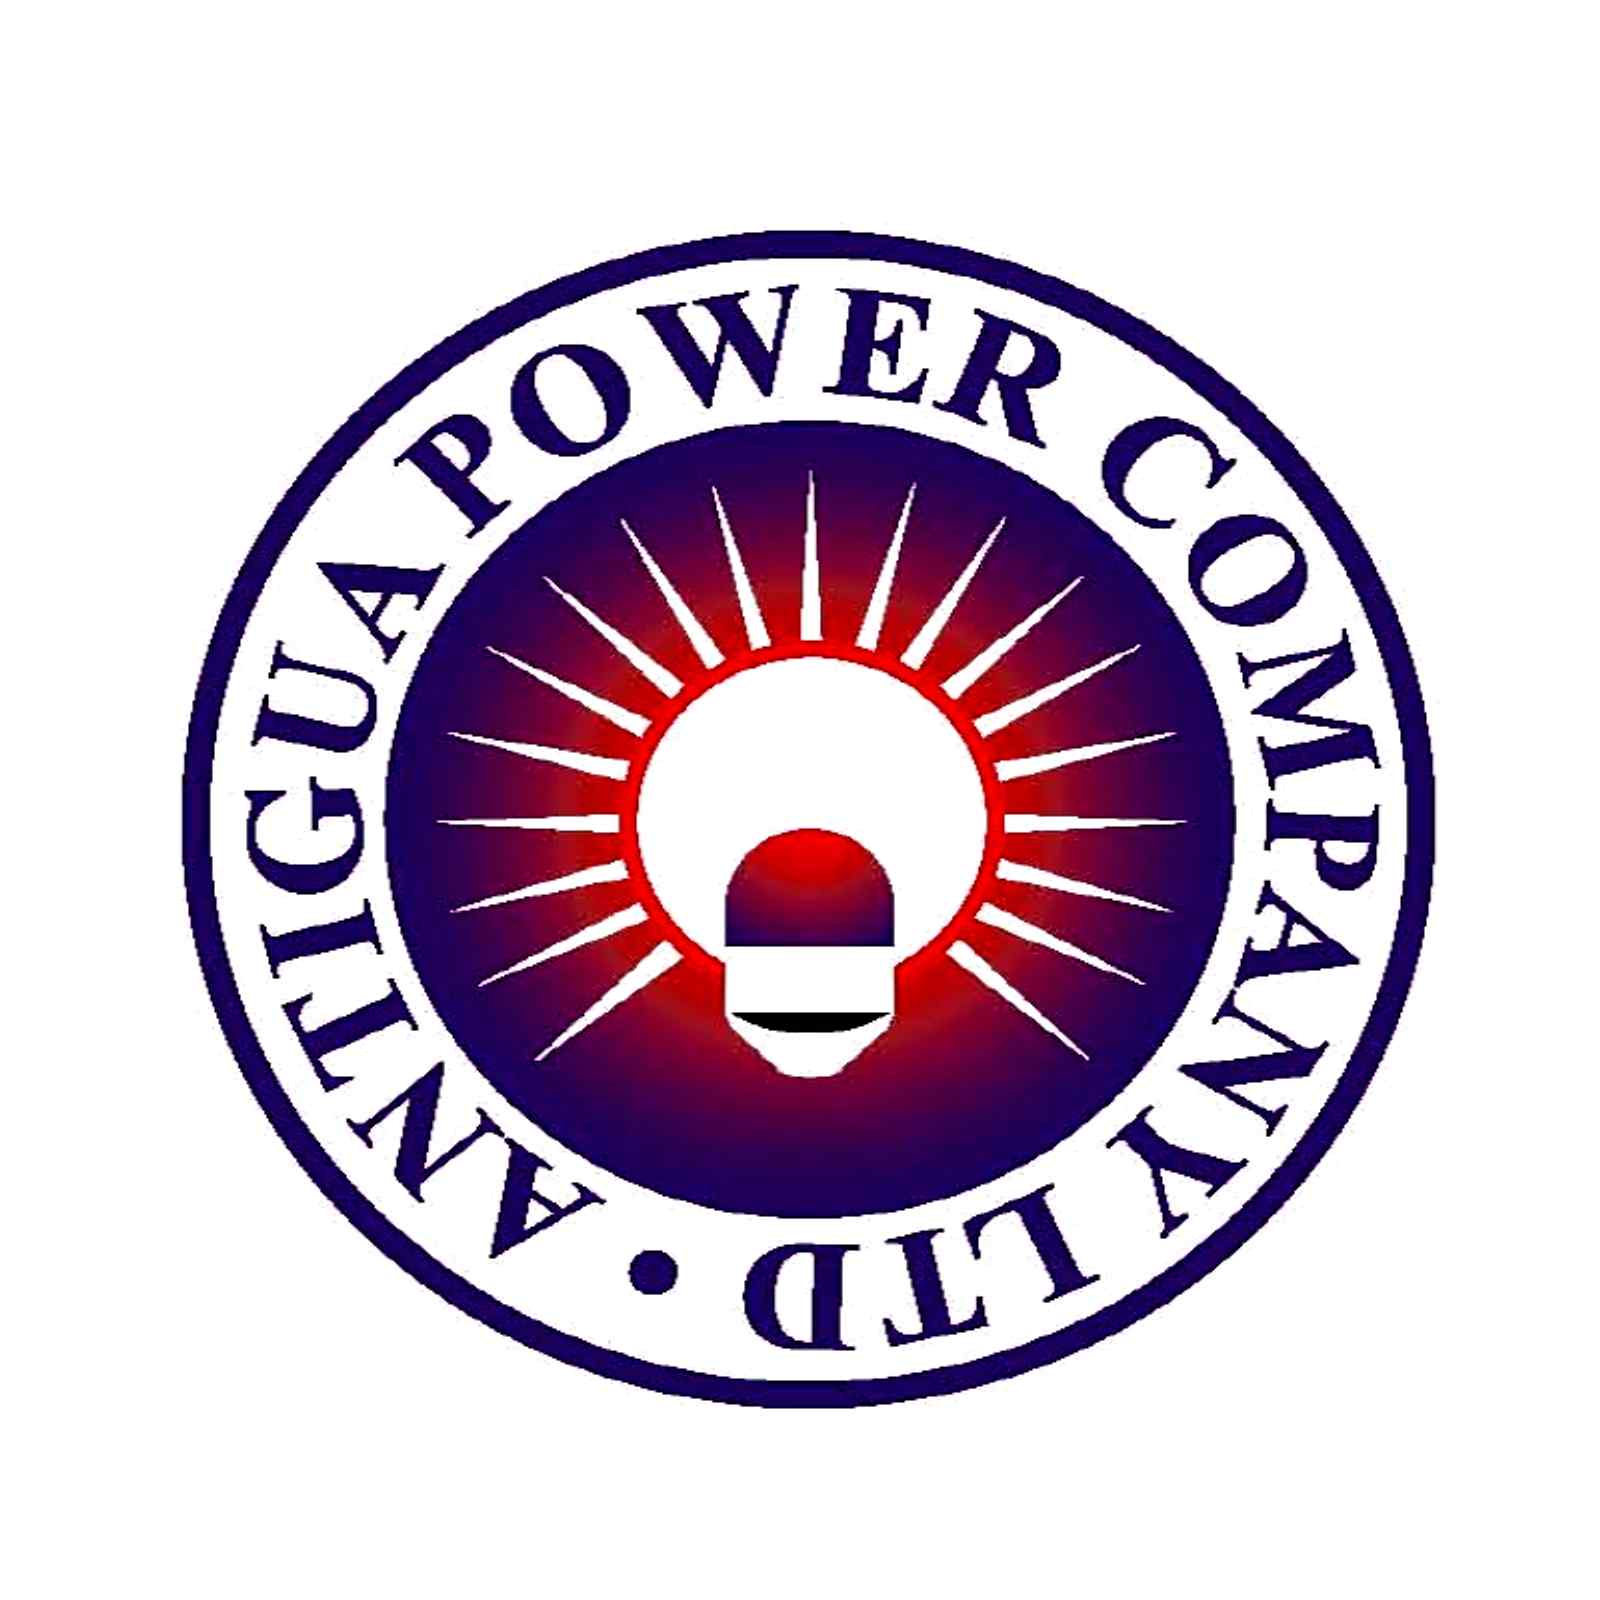 Antigua Power Company